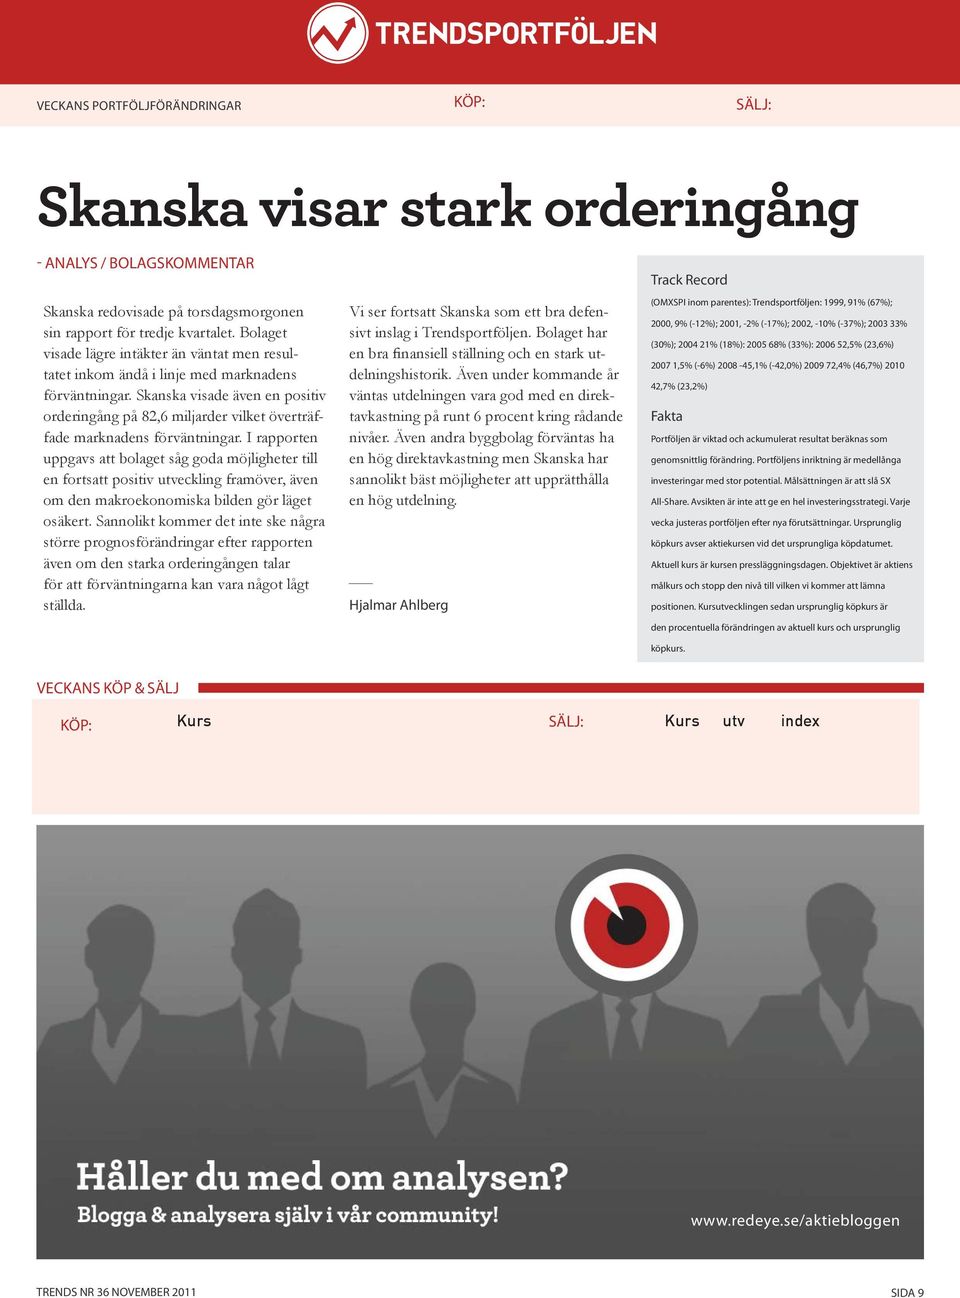 Skanska visade även en positiv orderingång på 82,6 miljarder vilket överträffade marknadens förväntningar.